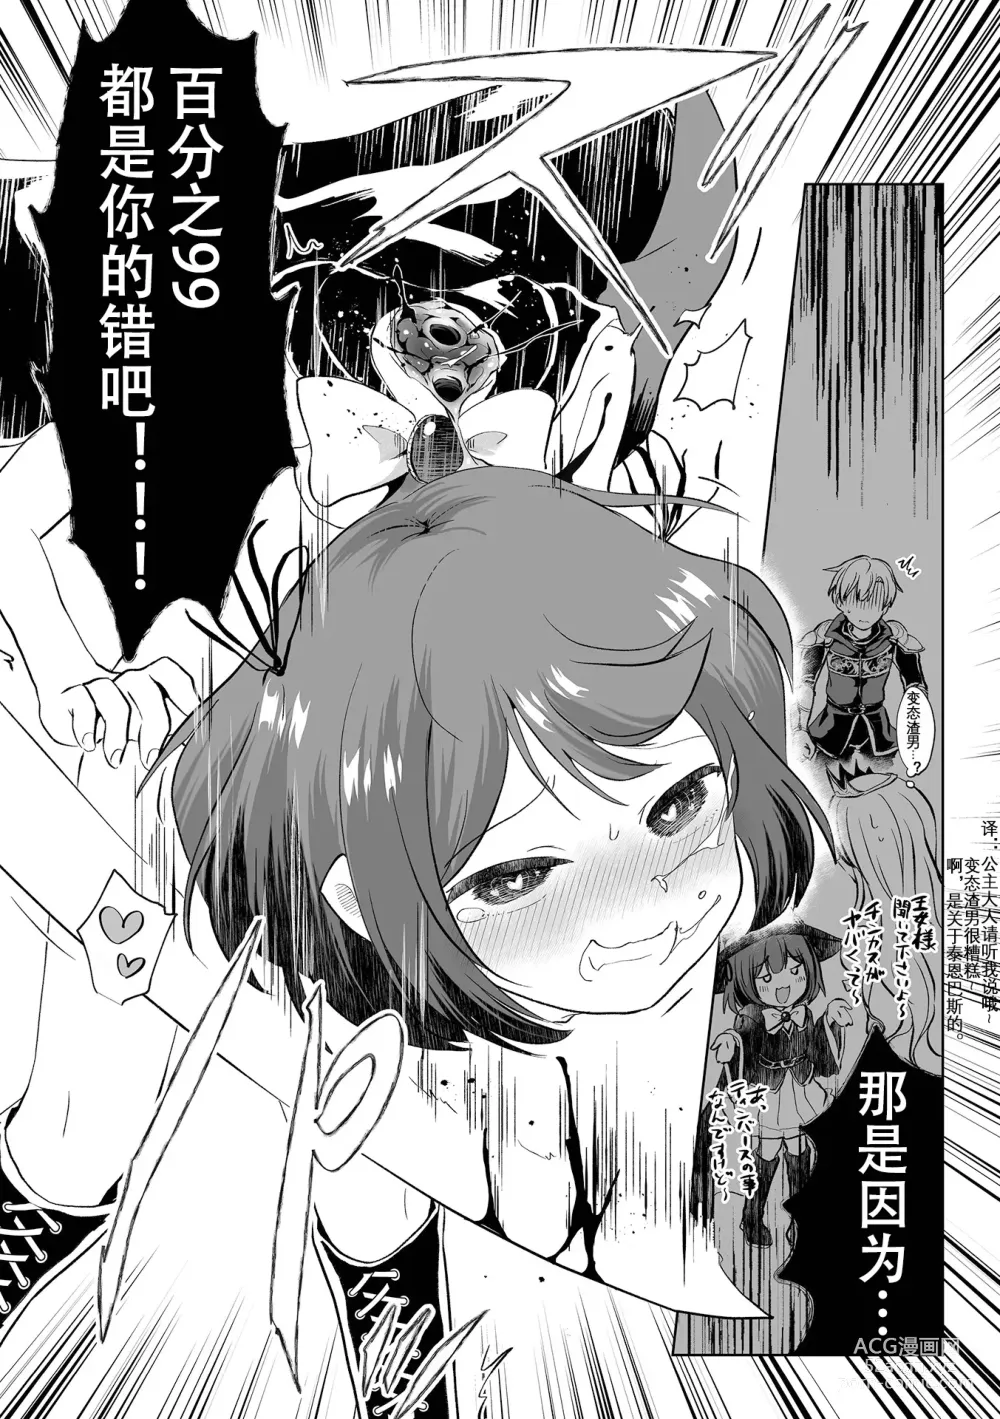 Page 4 of manga Dokuzu Yuusha to Namaiki Mahoutsukai